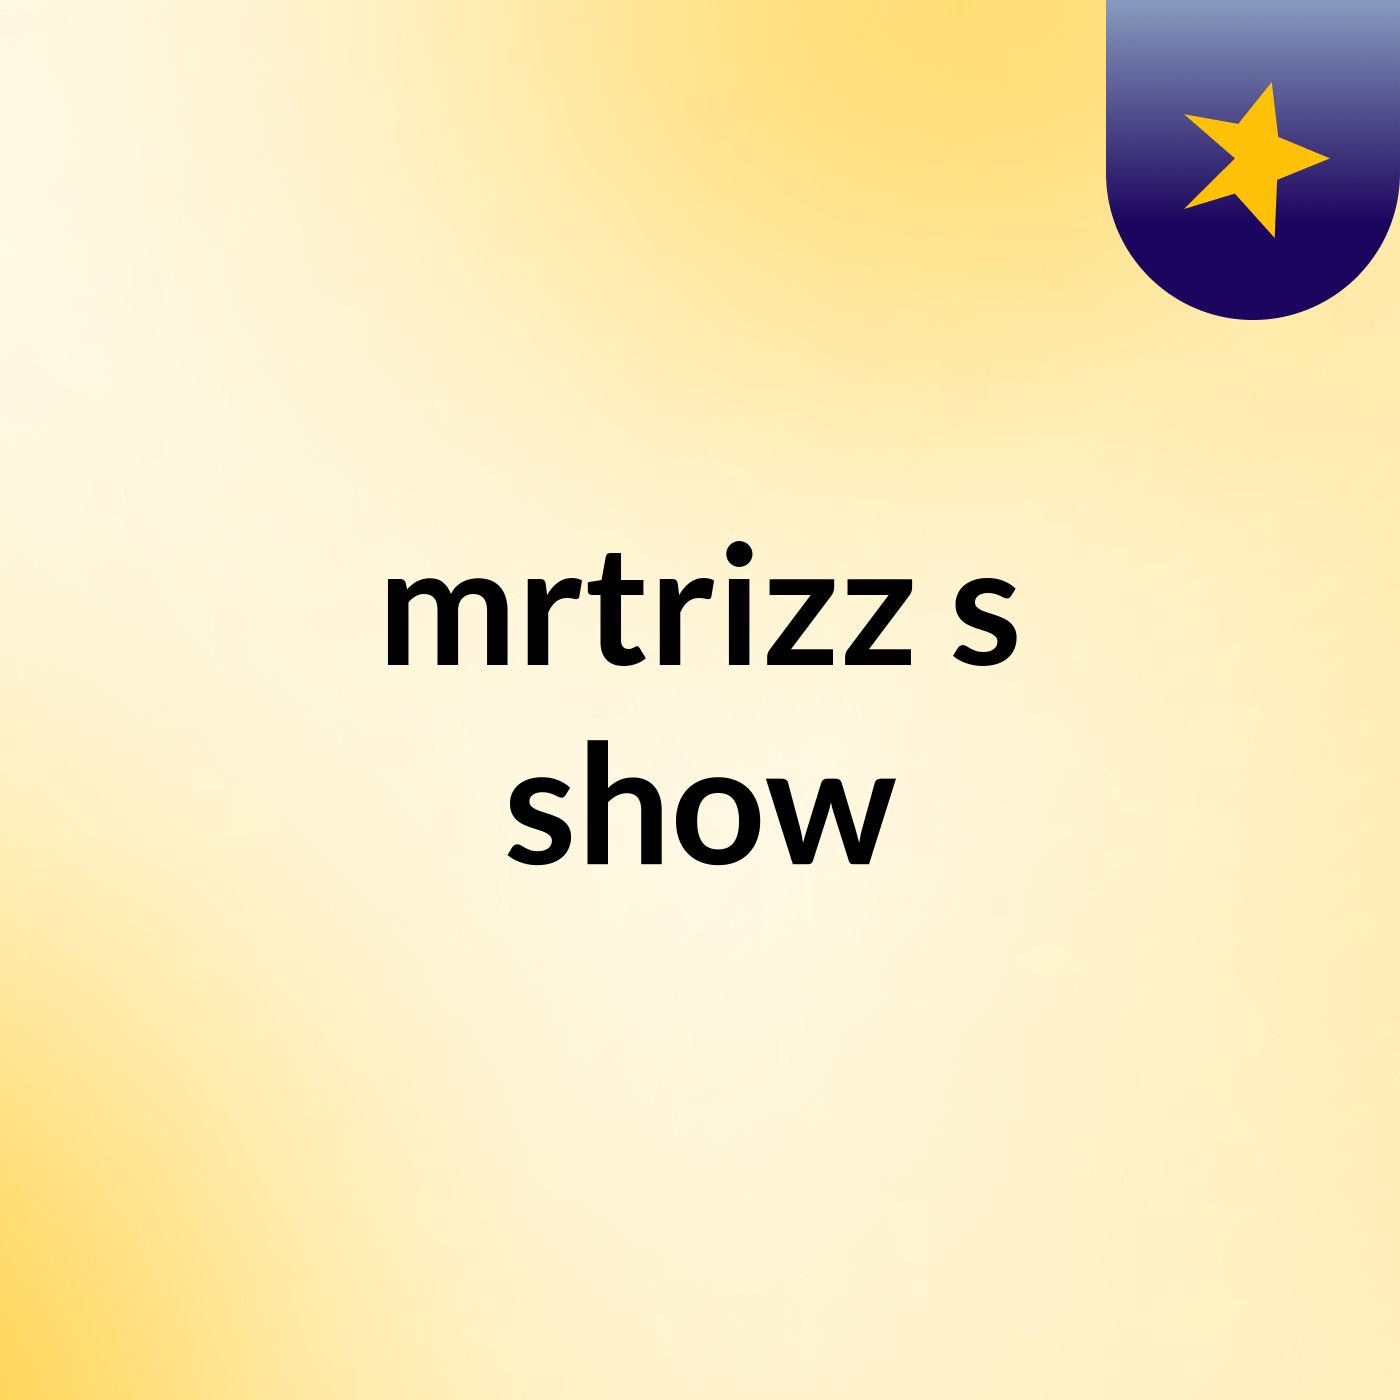 mrtrizz's show